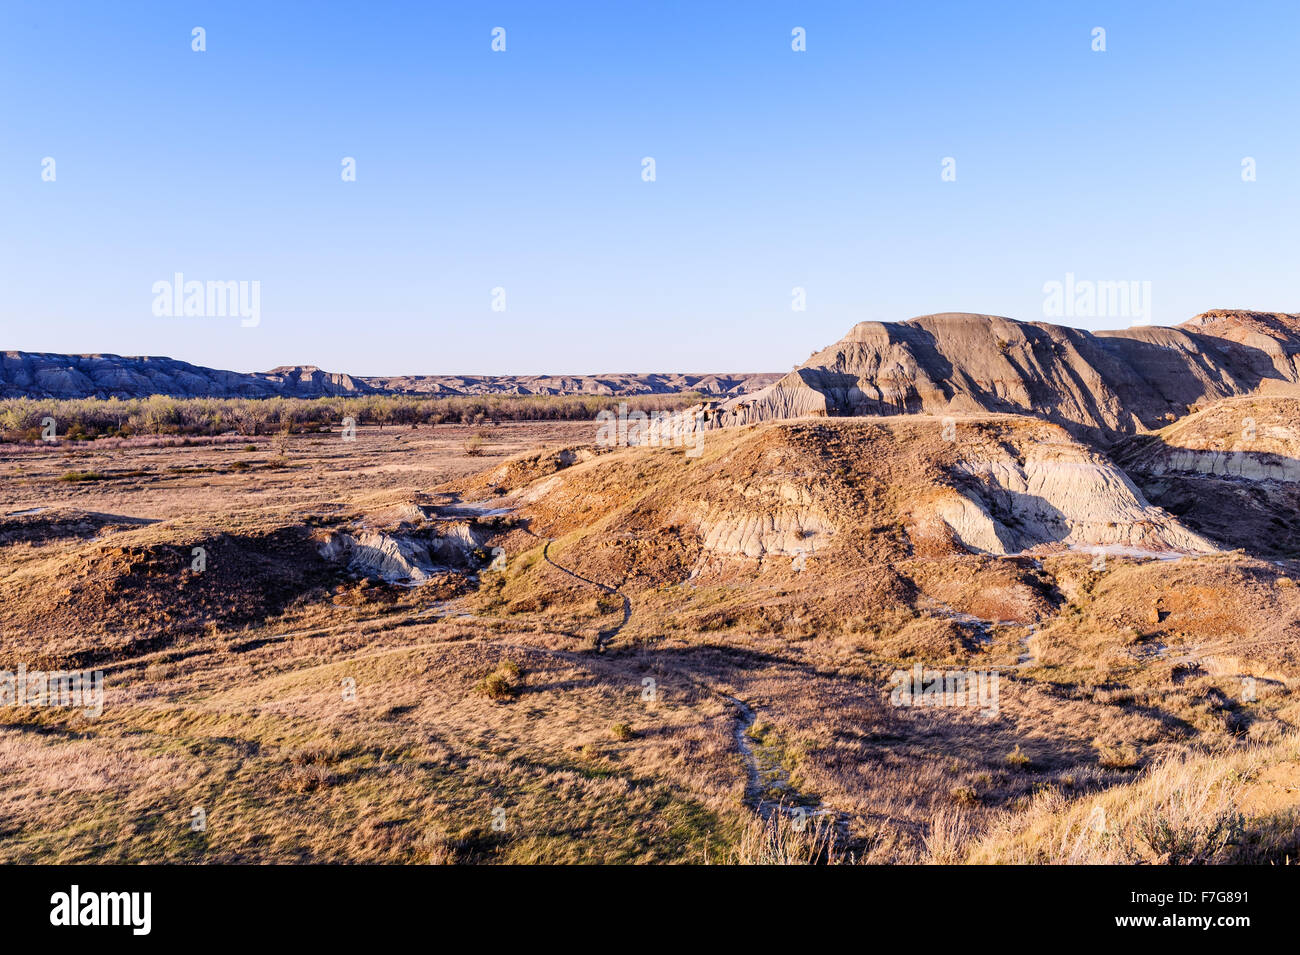 Parco Provinciale dei Dinosauri paesaggio osservato per la bellezza del suo paesaggio badlands e come un importante sito fossile, Alberta, Canada Foto Stock